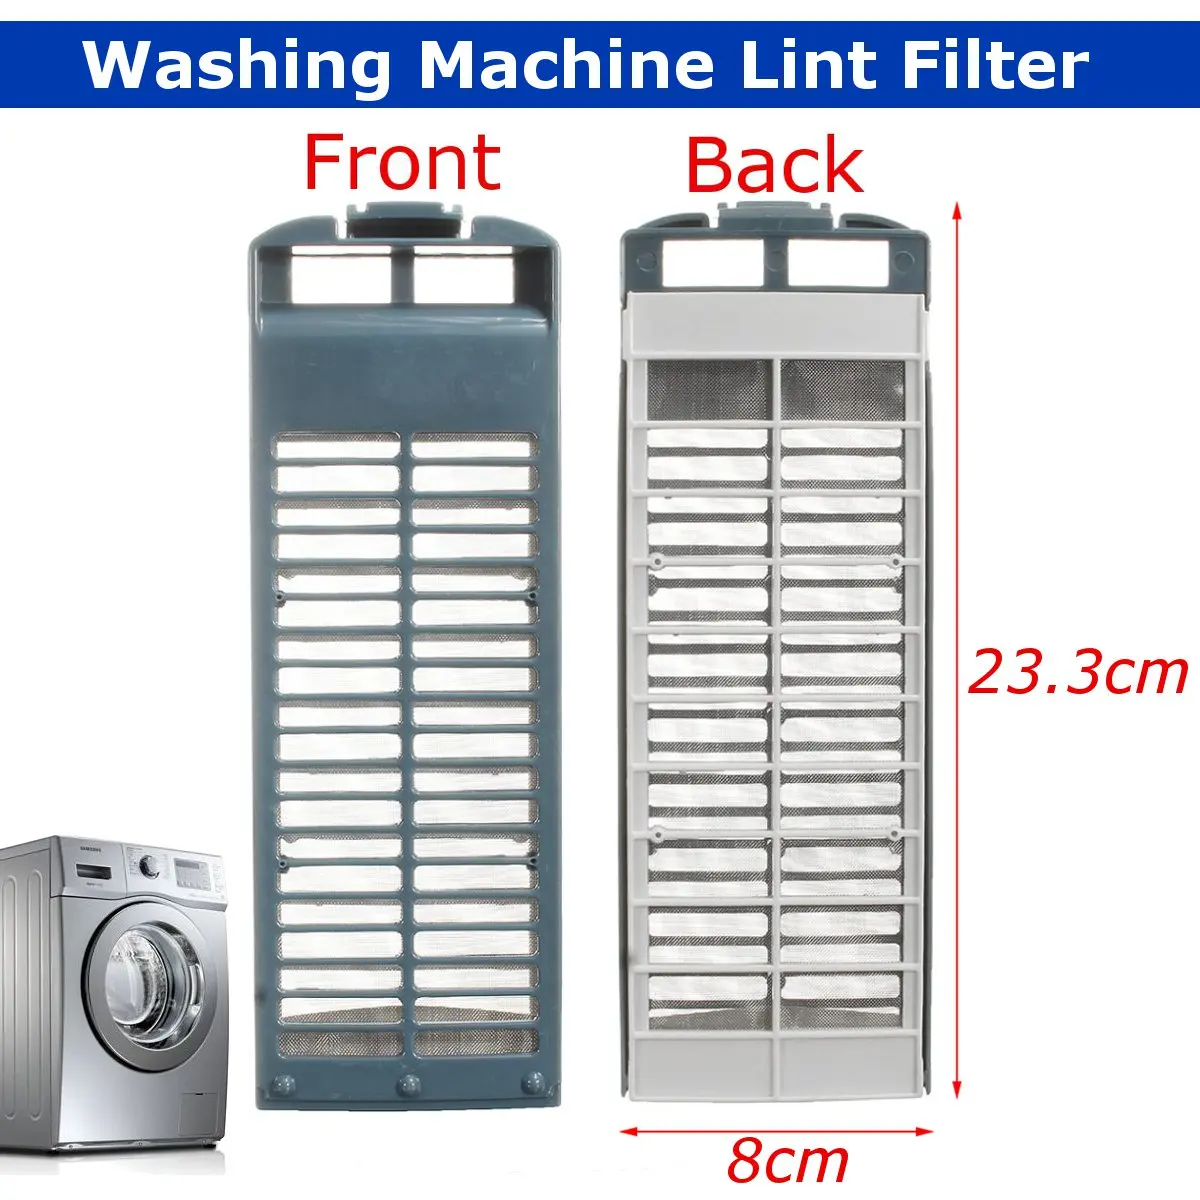 Фильтр для стиральной машины Magic Lint для стиральной машины samsung 8 см X 23,3 см